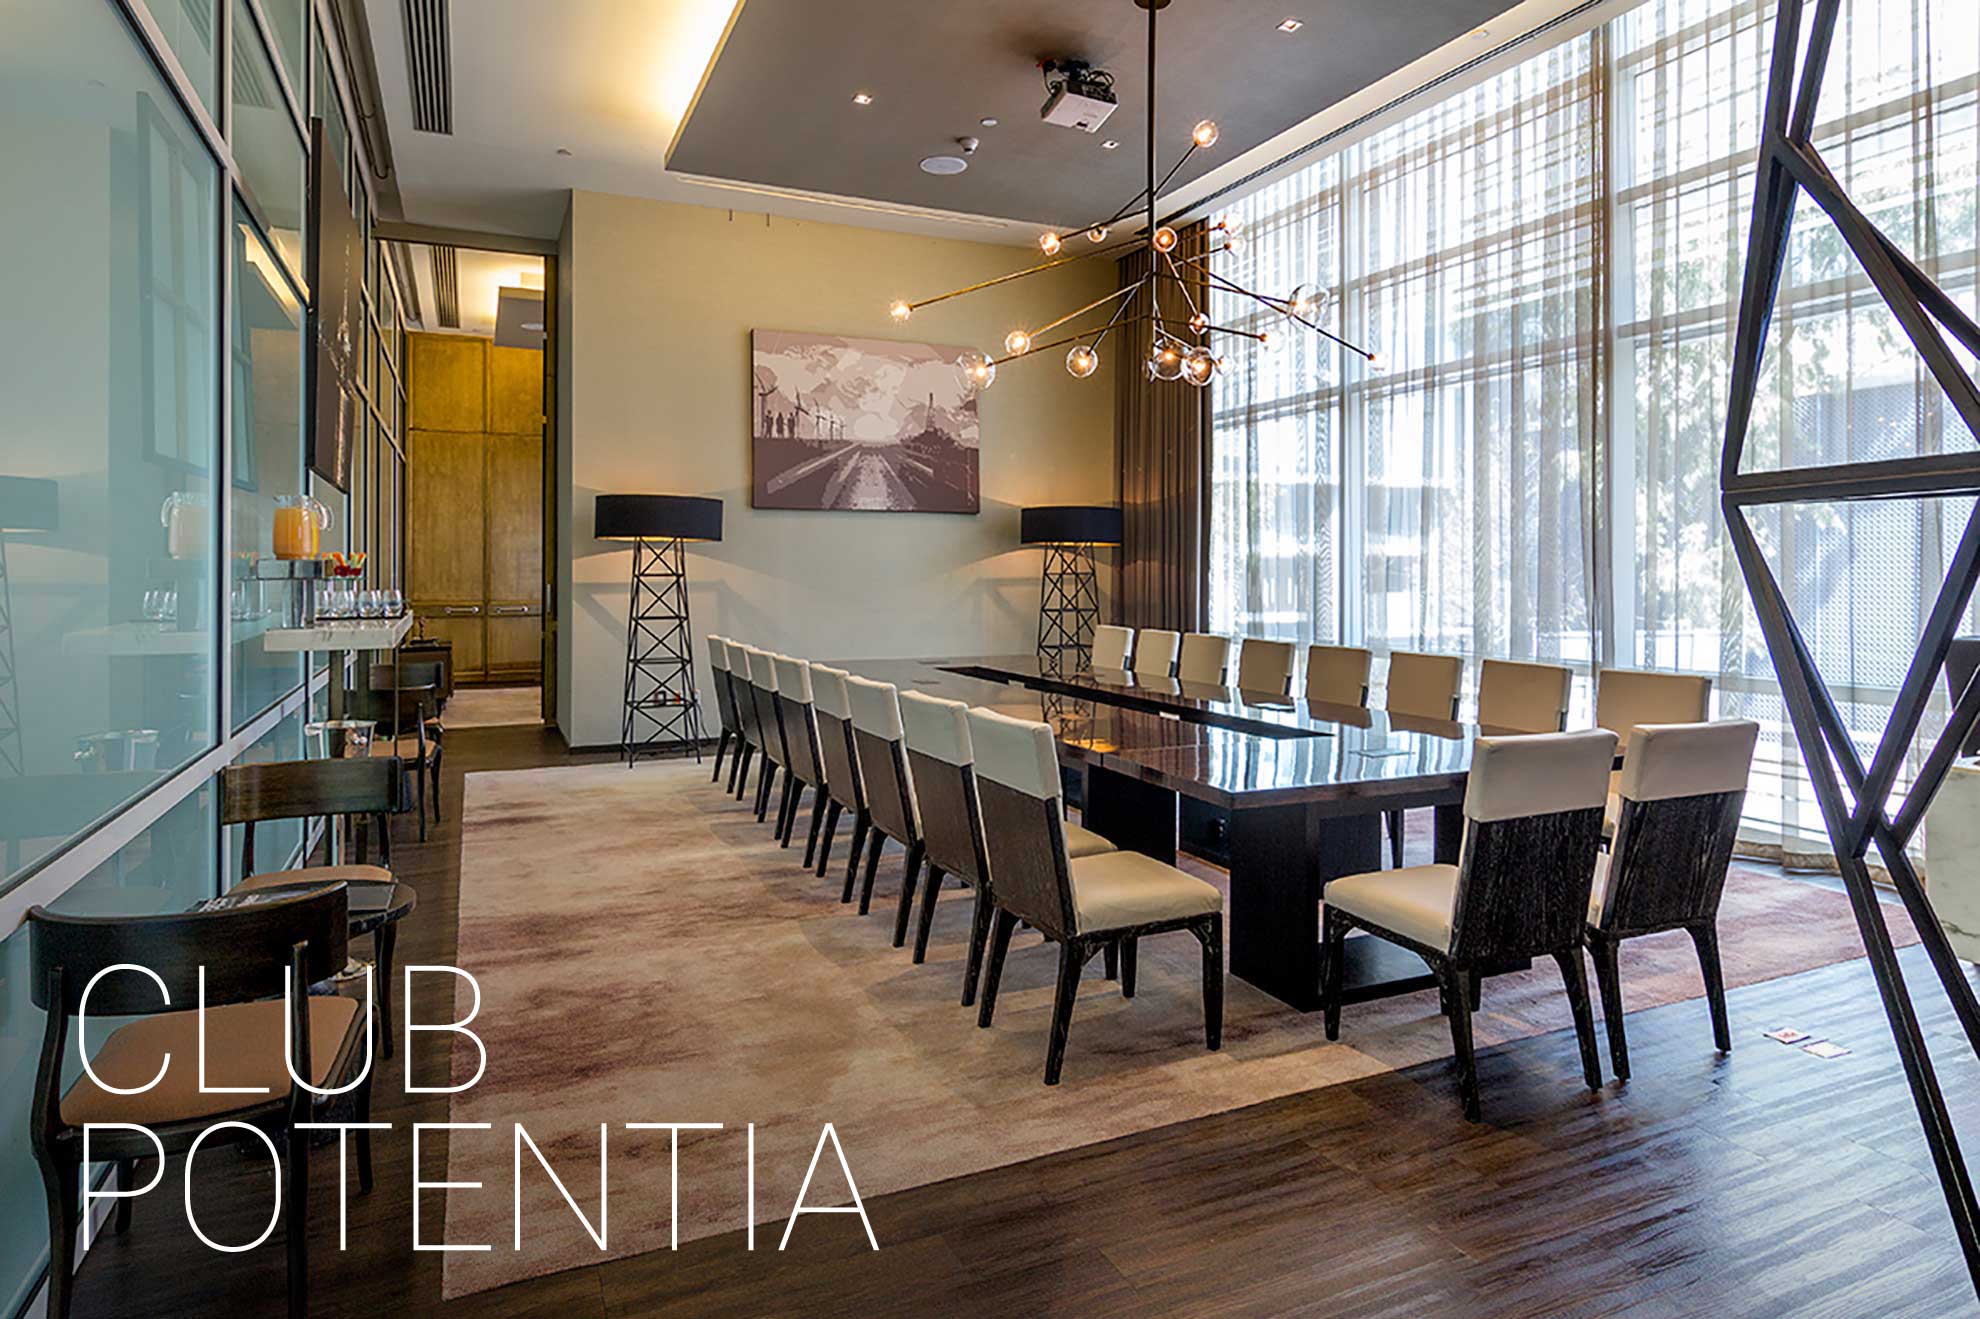 Club Potentia, espacio y muebles diseñados por el despacho arquitectónico de interiores por Depa 102.